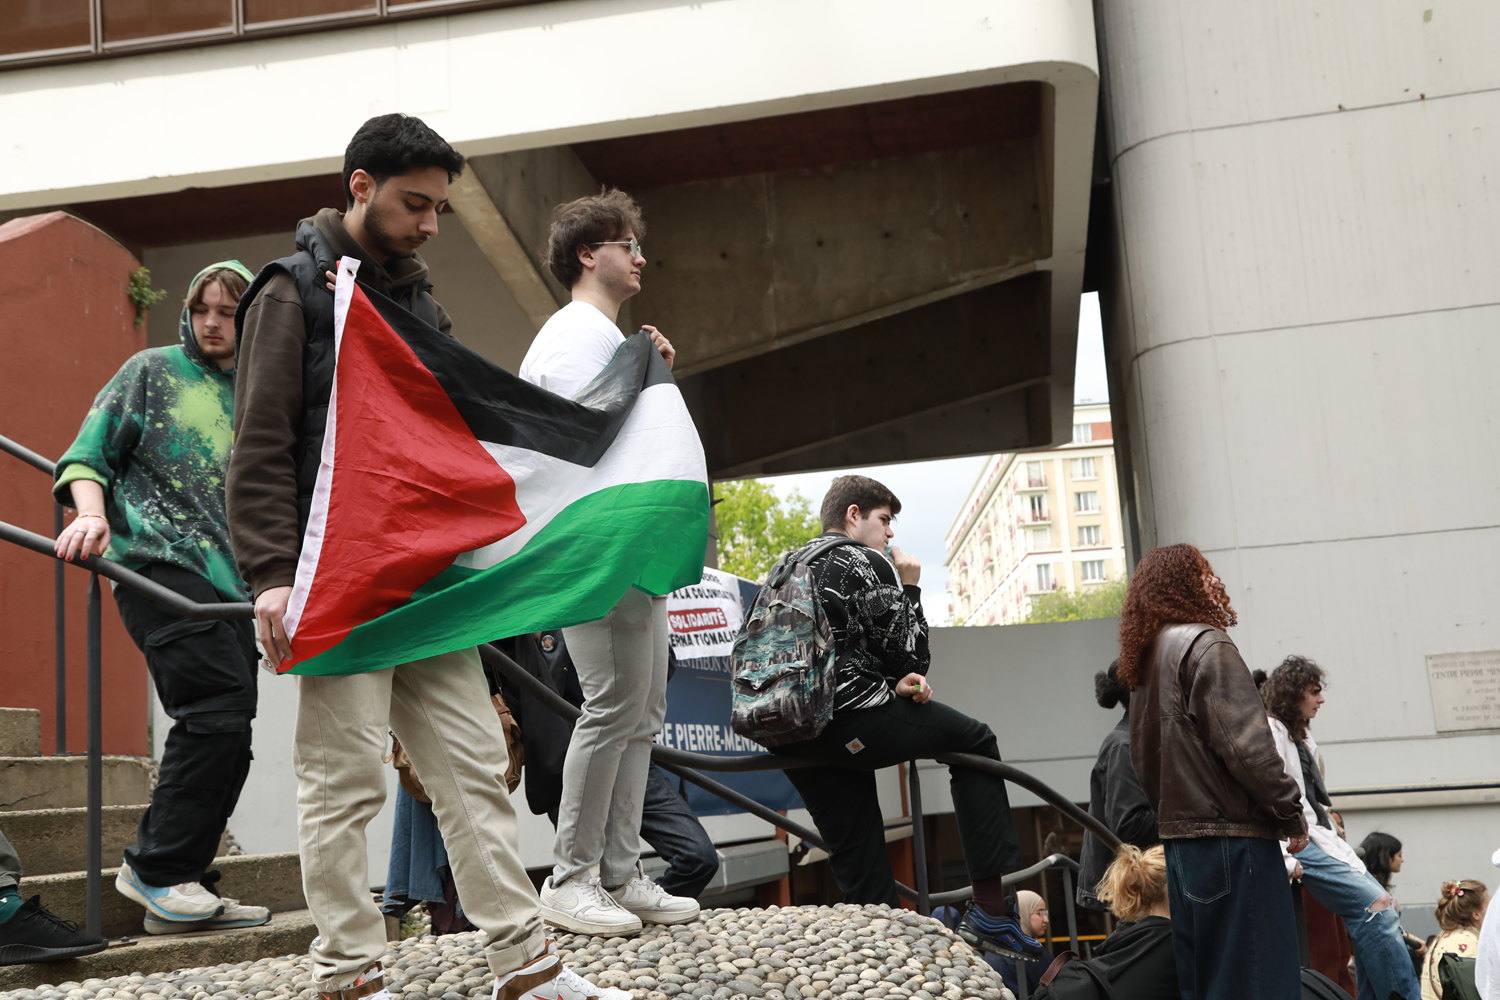 ABD'deki Filistin eylemleri Avrupa'ya sıçradı: Paris'te öğrenciler Gazze için kampüste eylem başlattı